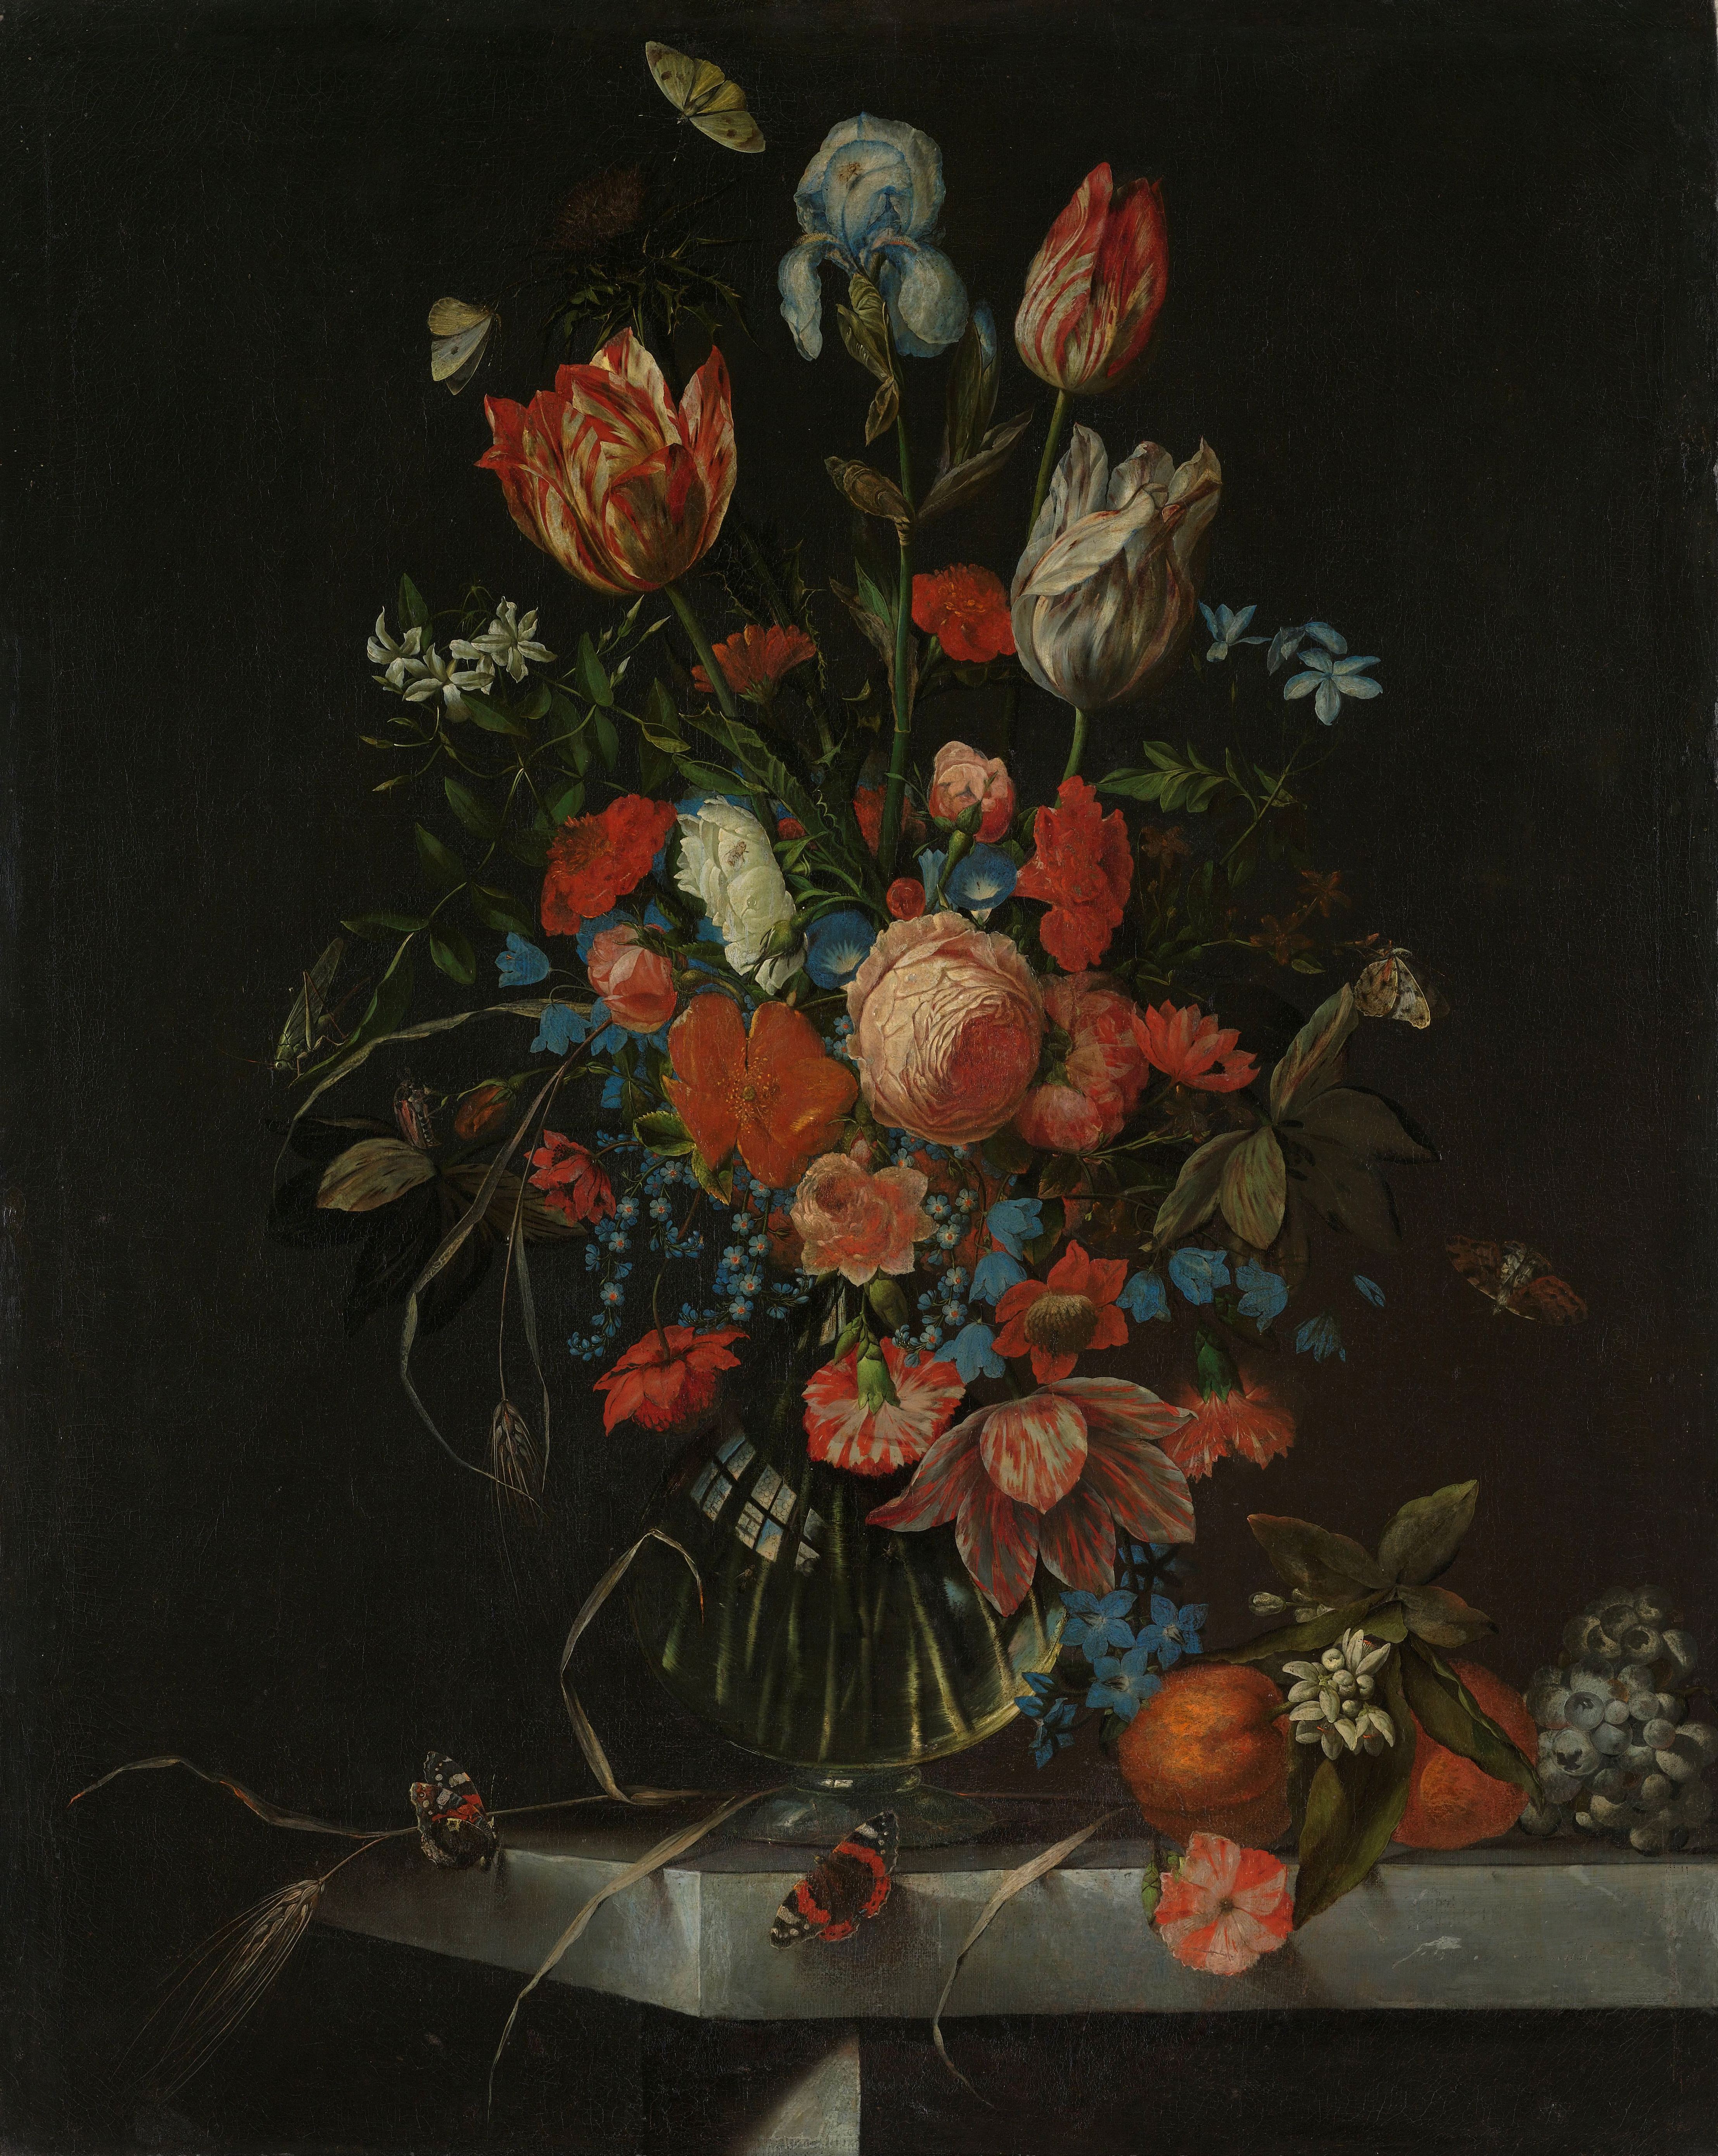 Overtreding Dood in de wereld hoofdstad File:Stilleven met bloemen Rijksmuseum SK-C-215.jpeg - Wikimedia Commons